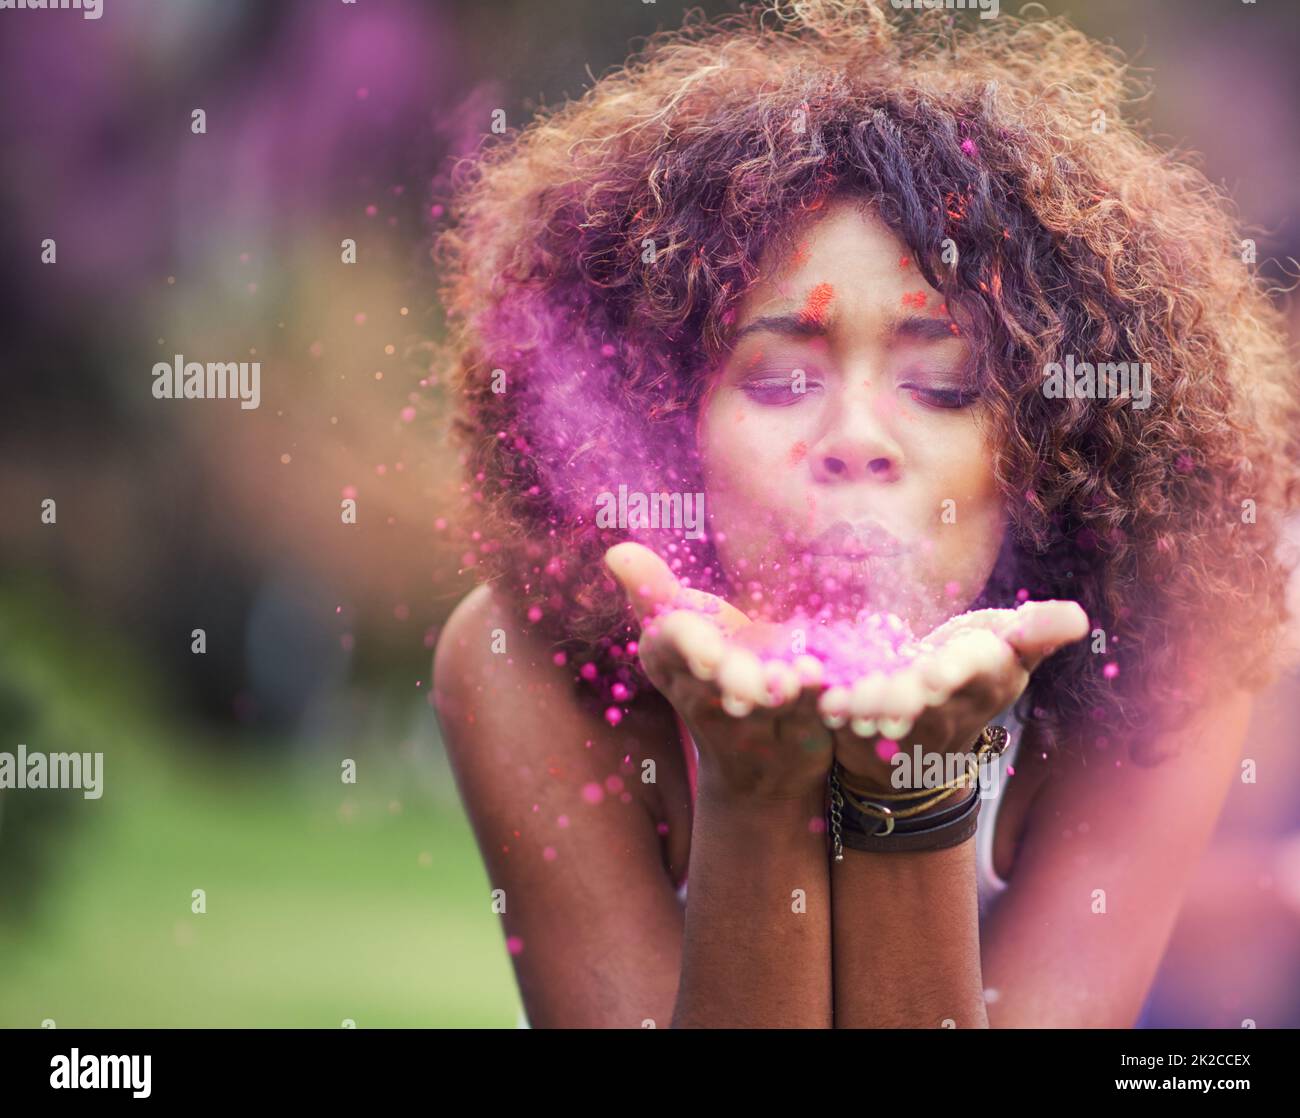 Dipingere il mondo rosa. Scatto di una giovane donna attraente che soffia la polvere di vernice viola alla macchina fotografica. Foto Stock